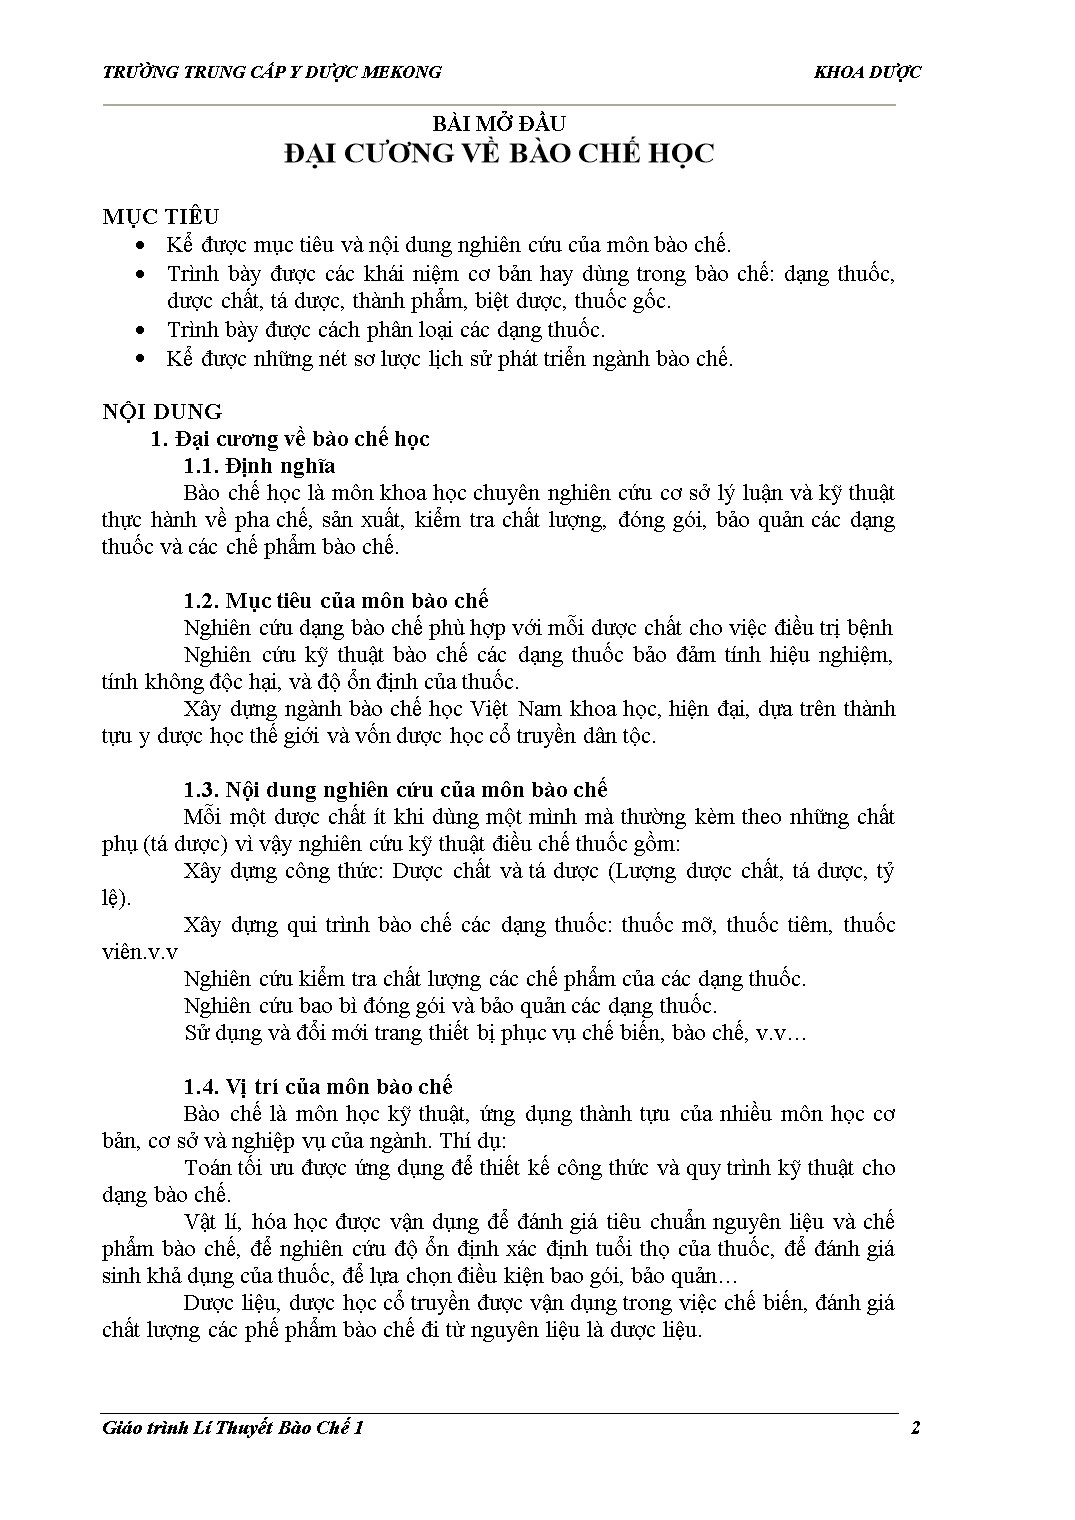 Giáo trình Bào chế học trang 2